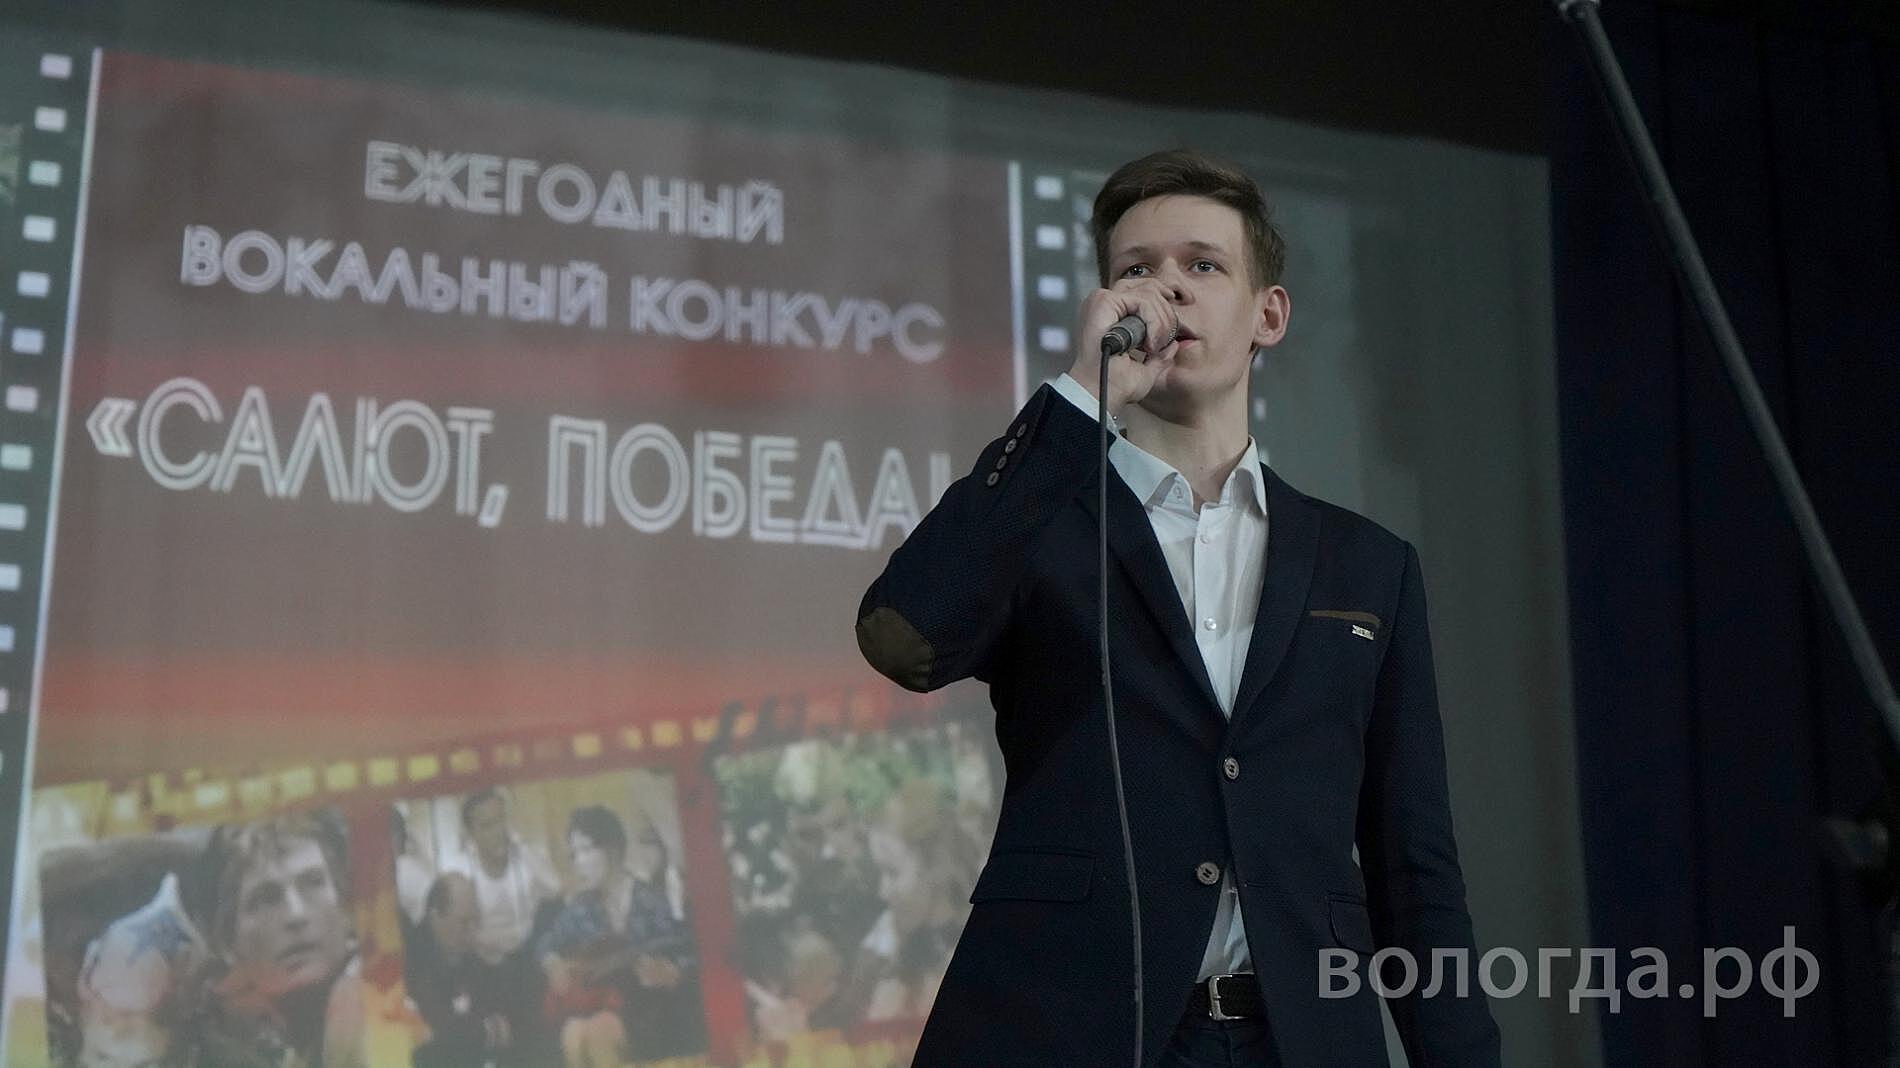 Почти 700 участников собрал песенный конкурс «Салют, Победа!» в Вологде